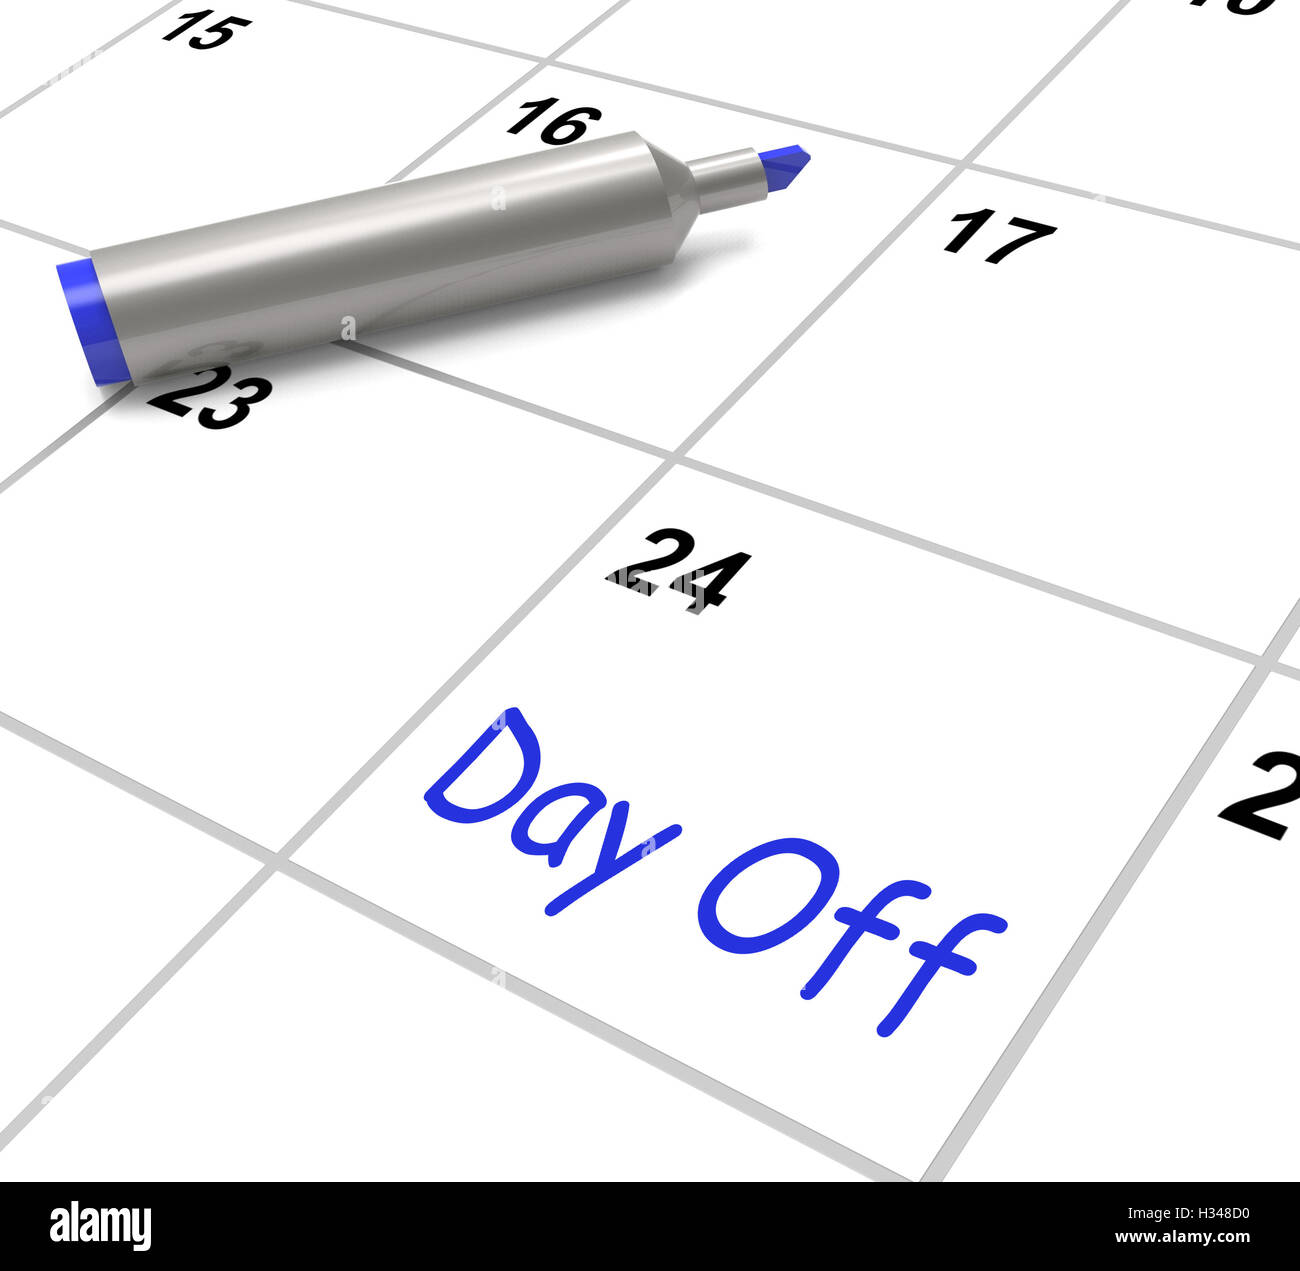 Journée de travail et congé calendrier signifie Maison de Vacances Banque D'Images